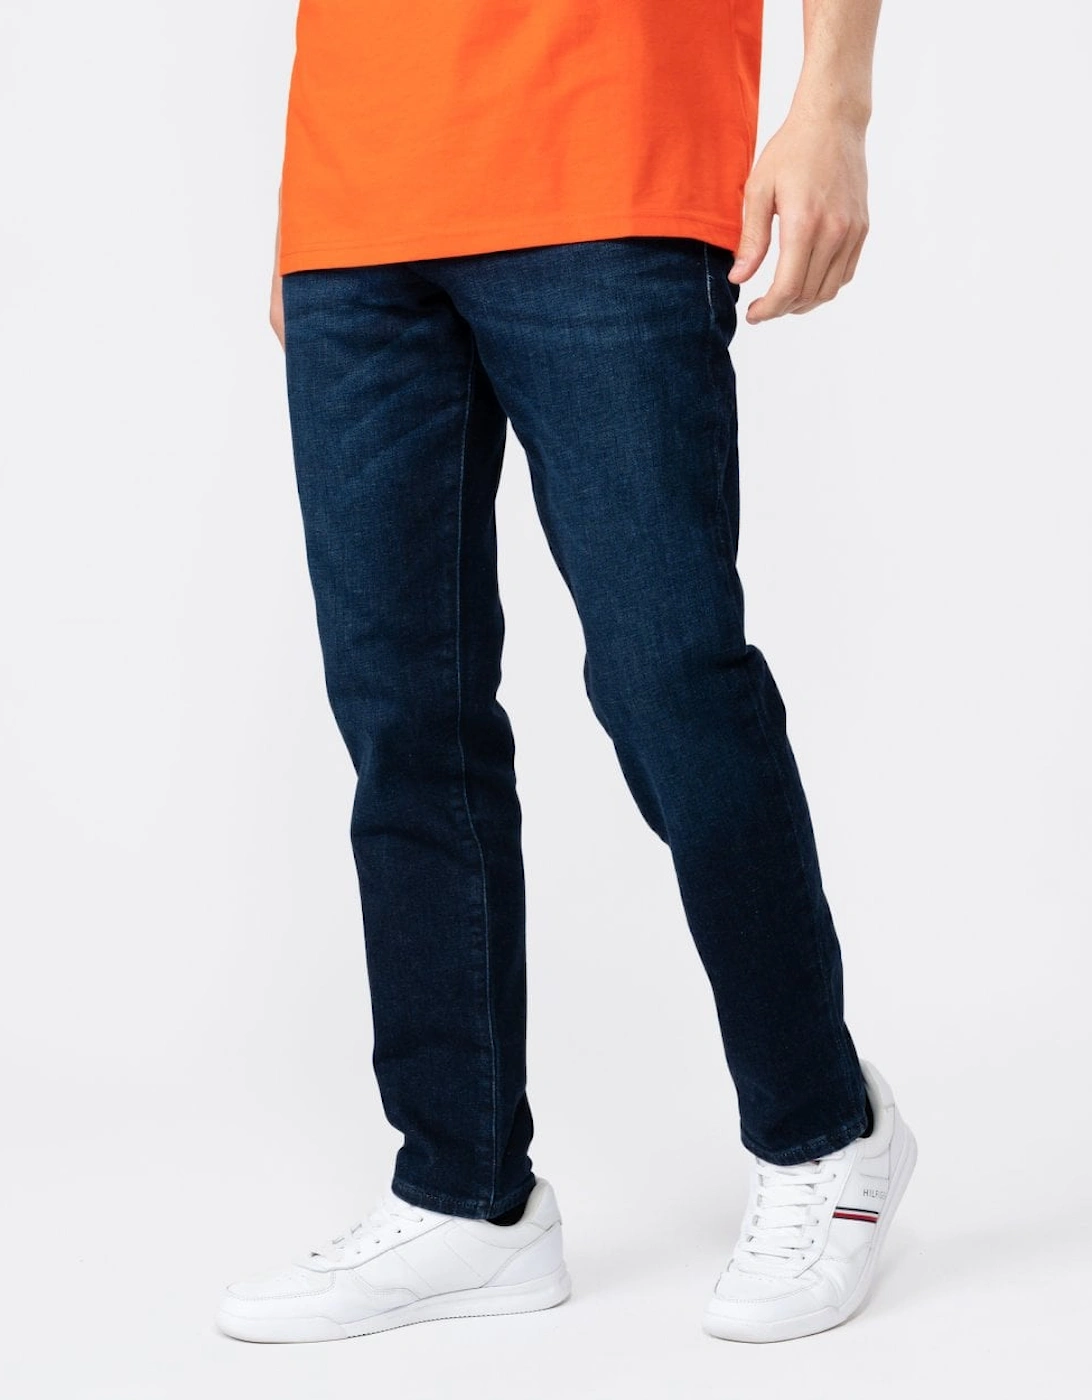 Orange Re.Maine Regular Fit Jeans in Dark Blue Comfort-Stretch Denim NOS